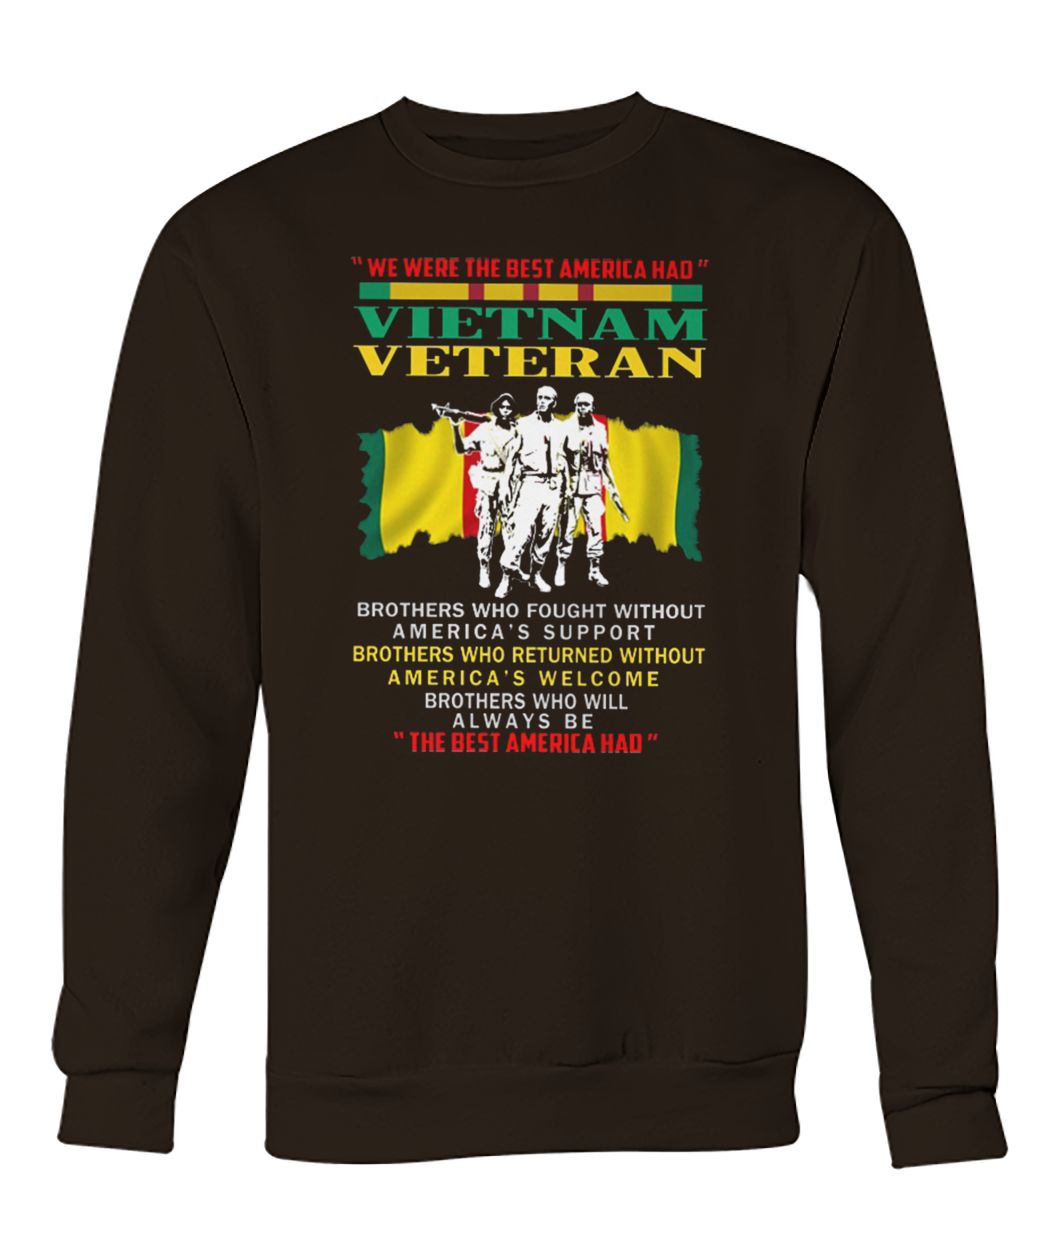 We were the best america had vietnam veteran crew neck sweatshirt